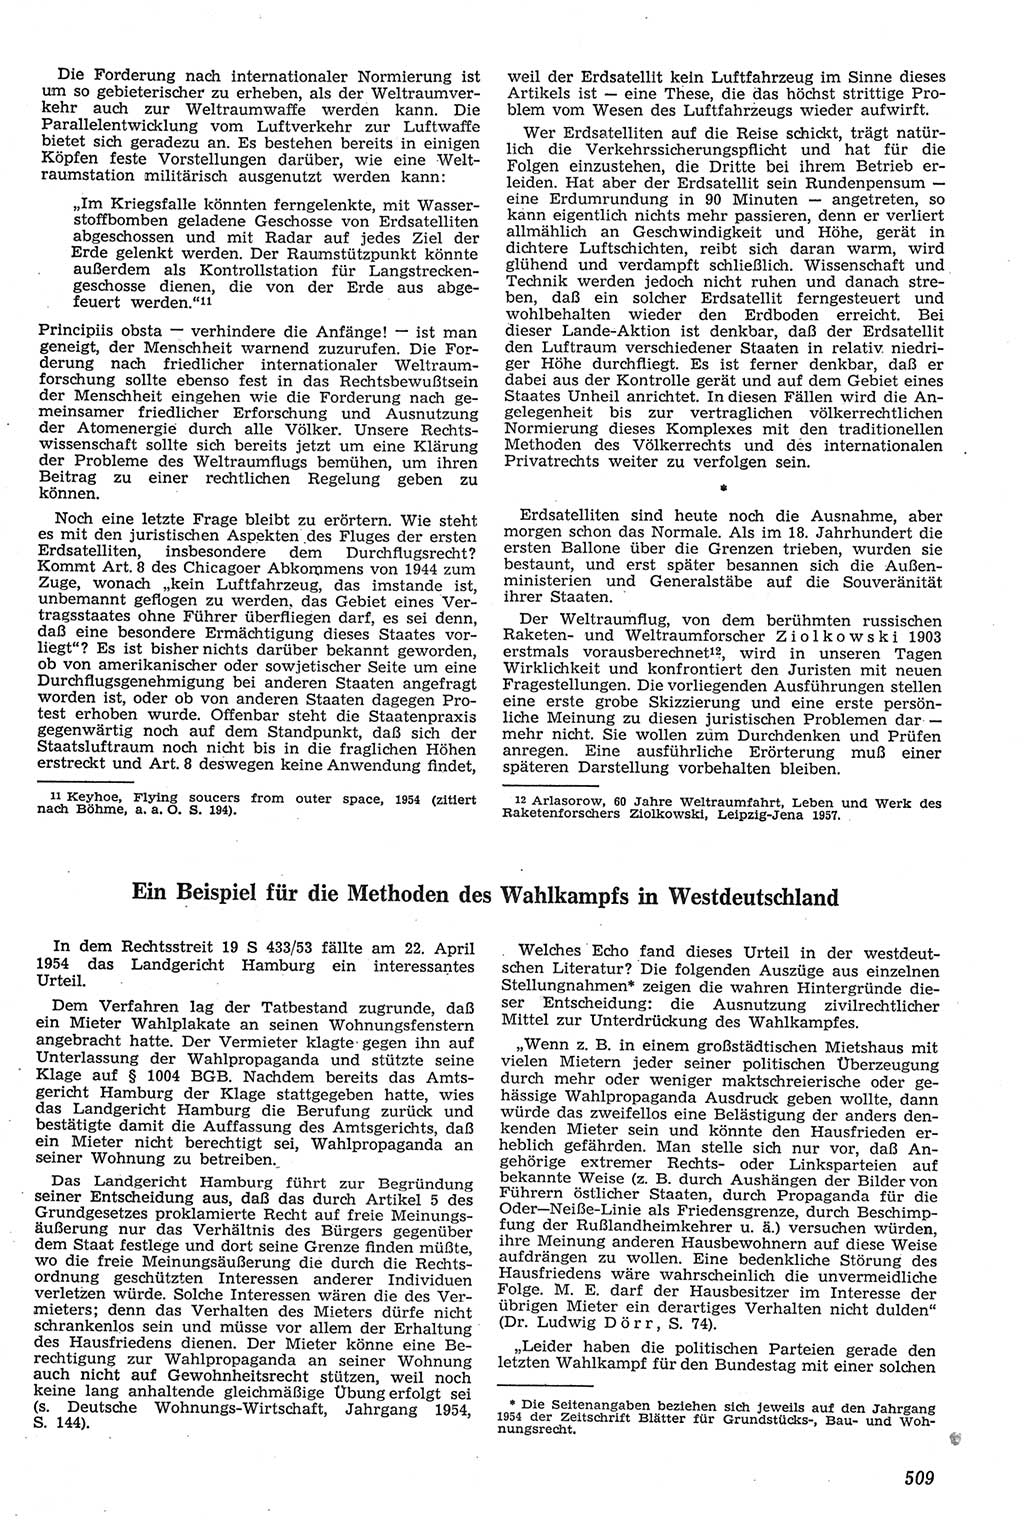 Neue Justiz (NJ), Zeitschrift für Recht und Rechtswissenschaft [Deutsche Demokratische Republik (DDR)], 11. Jahrgang 1957, Seite 509 (NJ DDR 1957, S. 509)